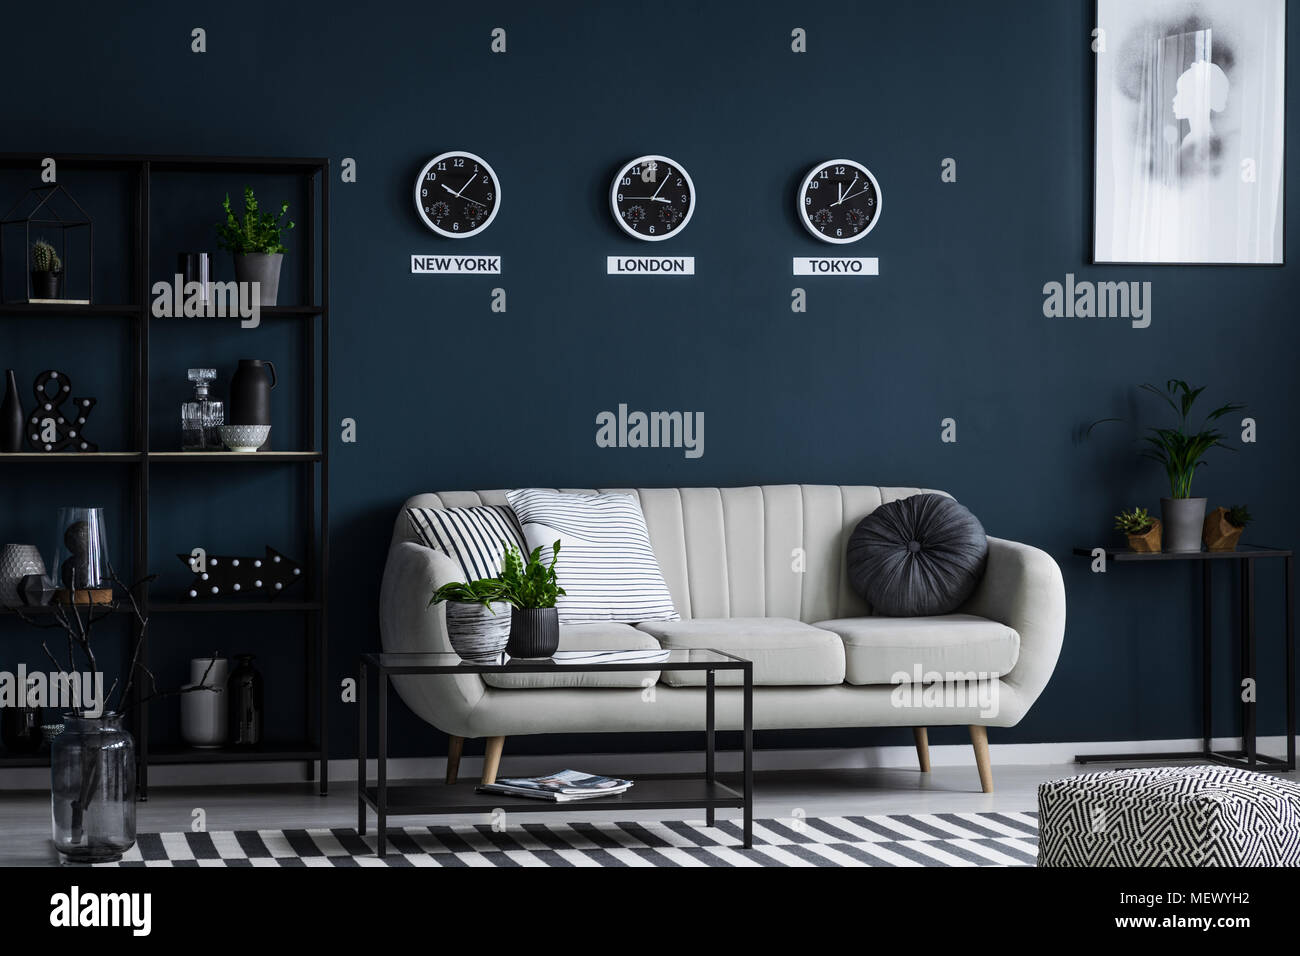 Weiß Sofa, Couchtisch, Metall Regal mit Dekorationen und drei Uhren auf der blauen Wand im Wohnzimmer Innenraum Stockfoto